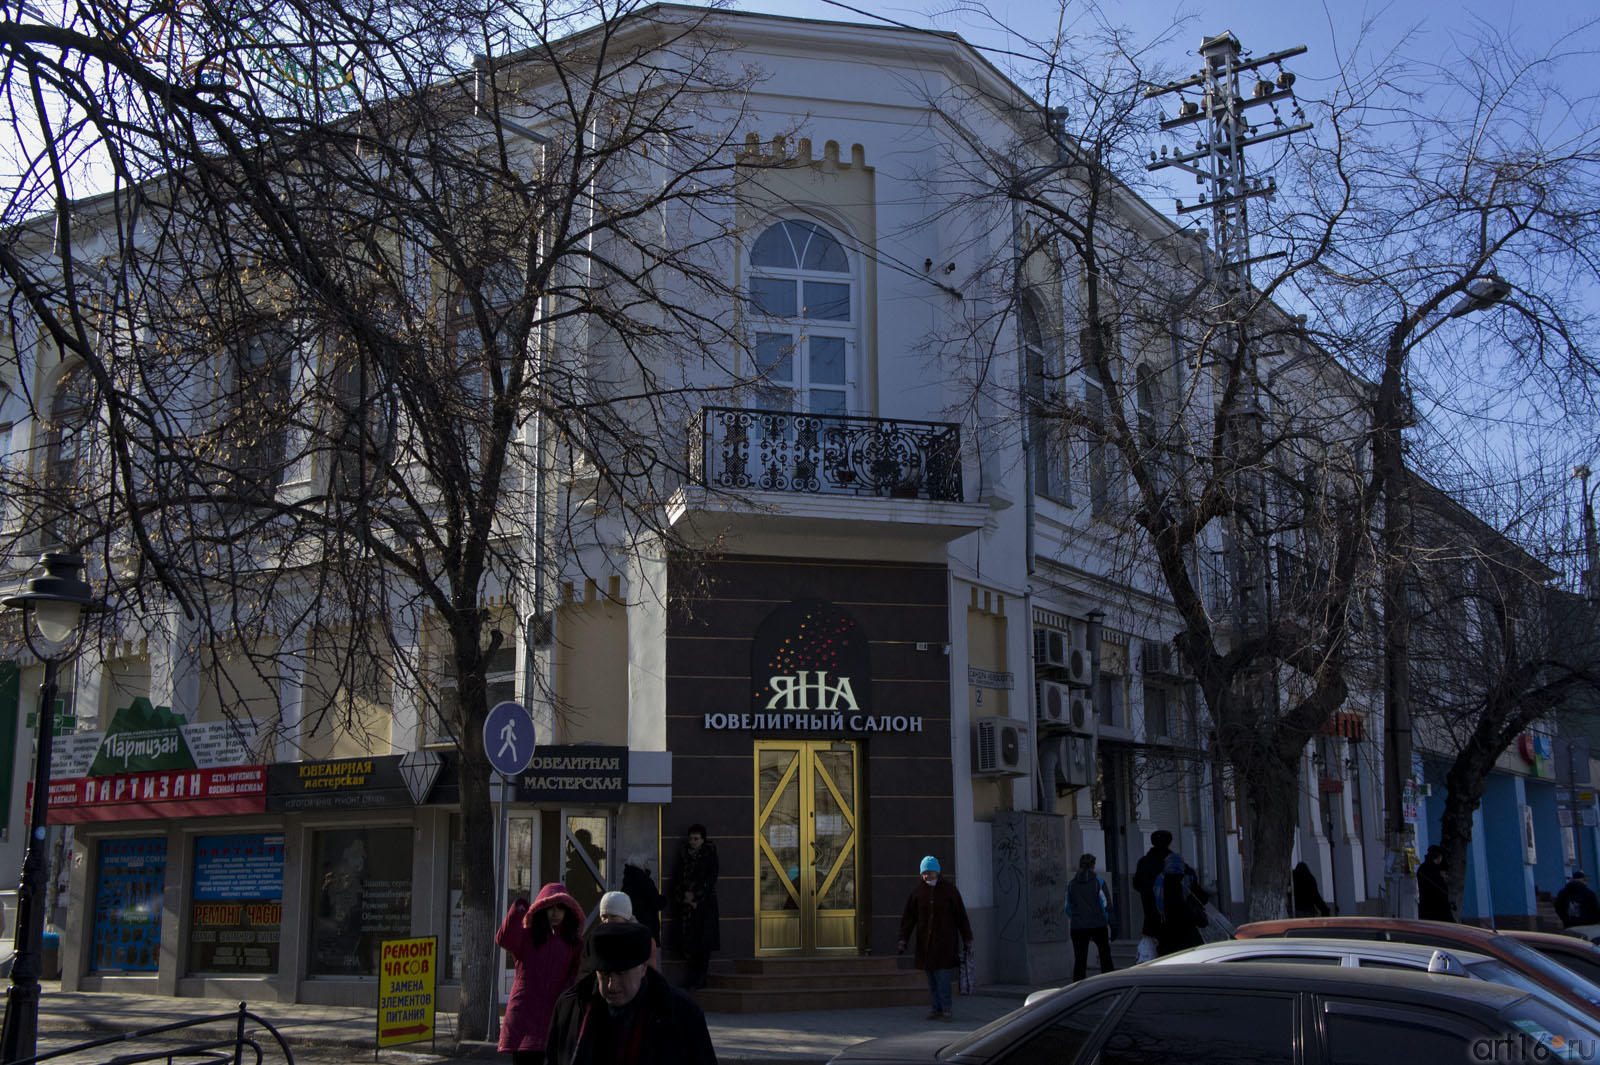 В этом доме расположена Городская центральная библиотека им. А.С. Пушкина (в т.ч.)::Симферополь, февраль 2011